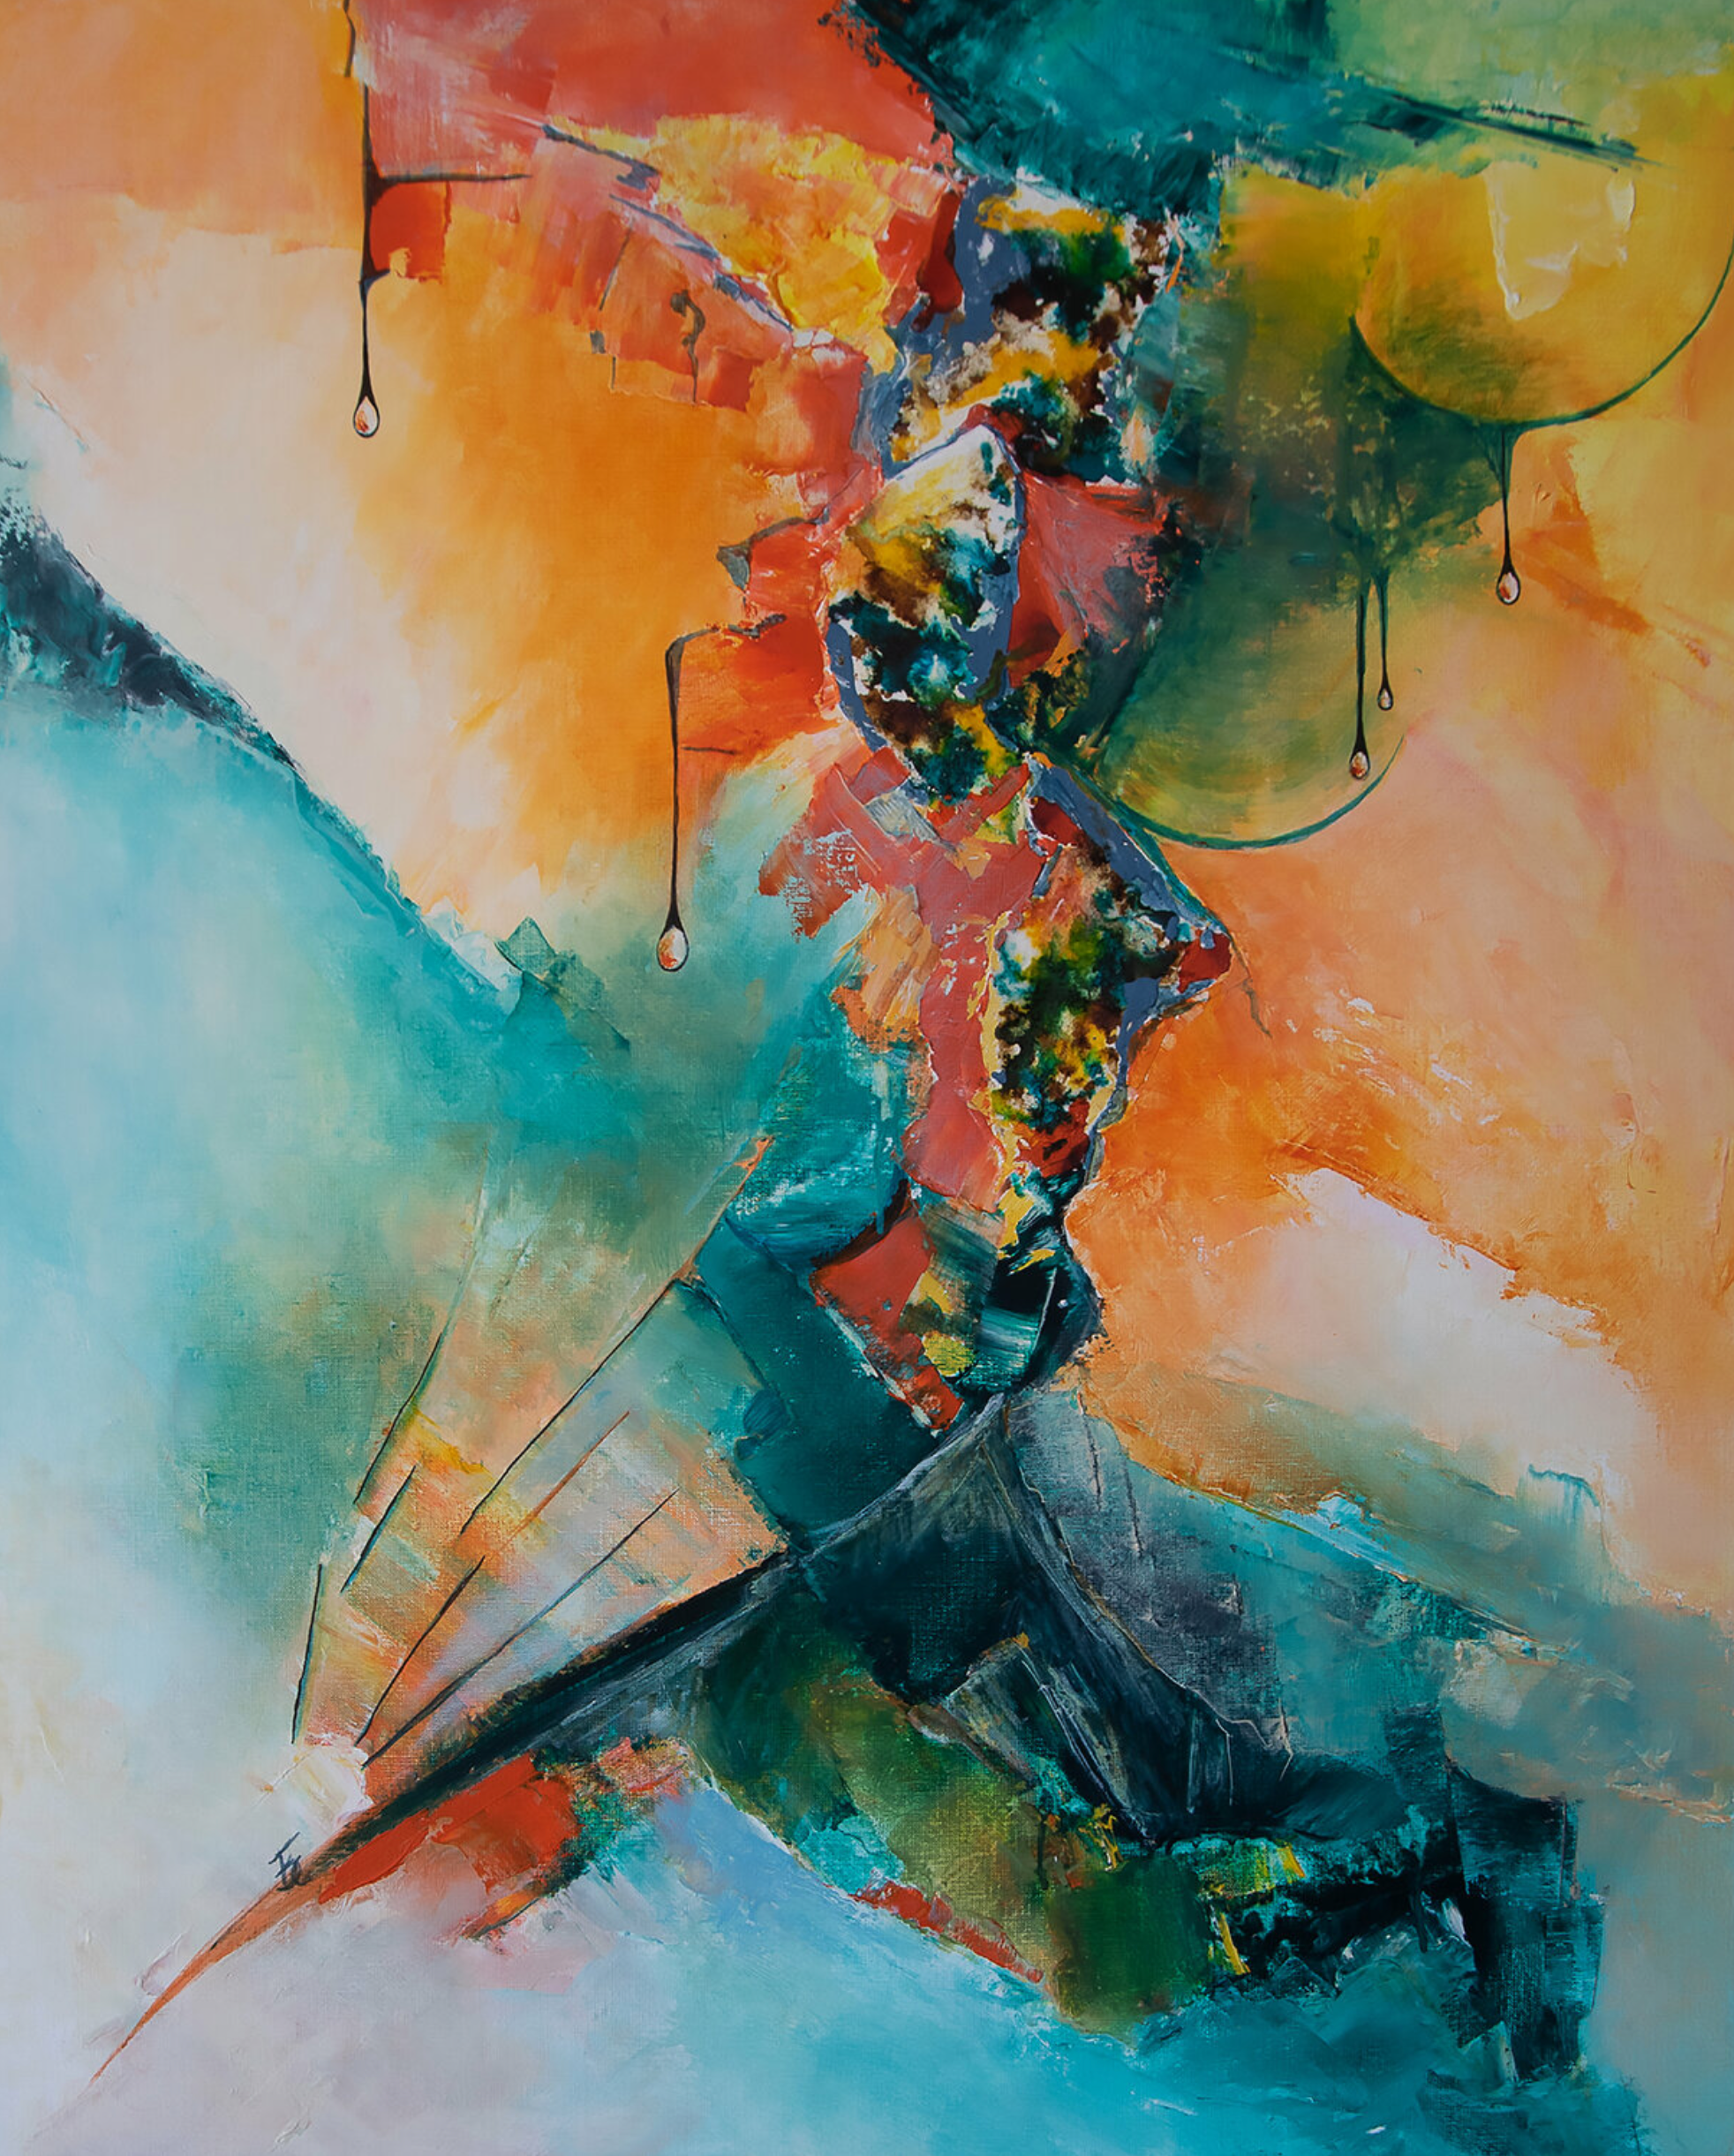 La pintura abstracta "Quintescence" de Françoise Dugourd-Caput muestra una silueta onírica espacial o extraterrestre, la luz acompaña el viaje en medio de un caos de esferas y formas geométricas, gotas de vida se abren a un espacio portador de esperanza. Una invitación a un viaje iniciático hacia la autorrealización.